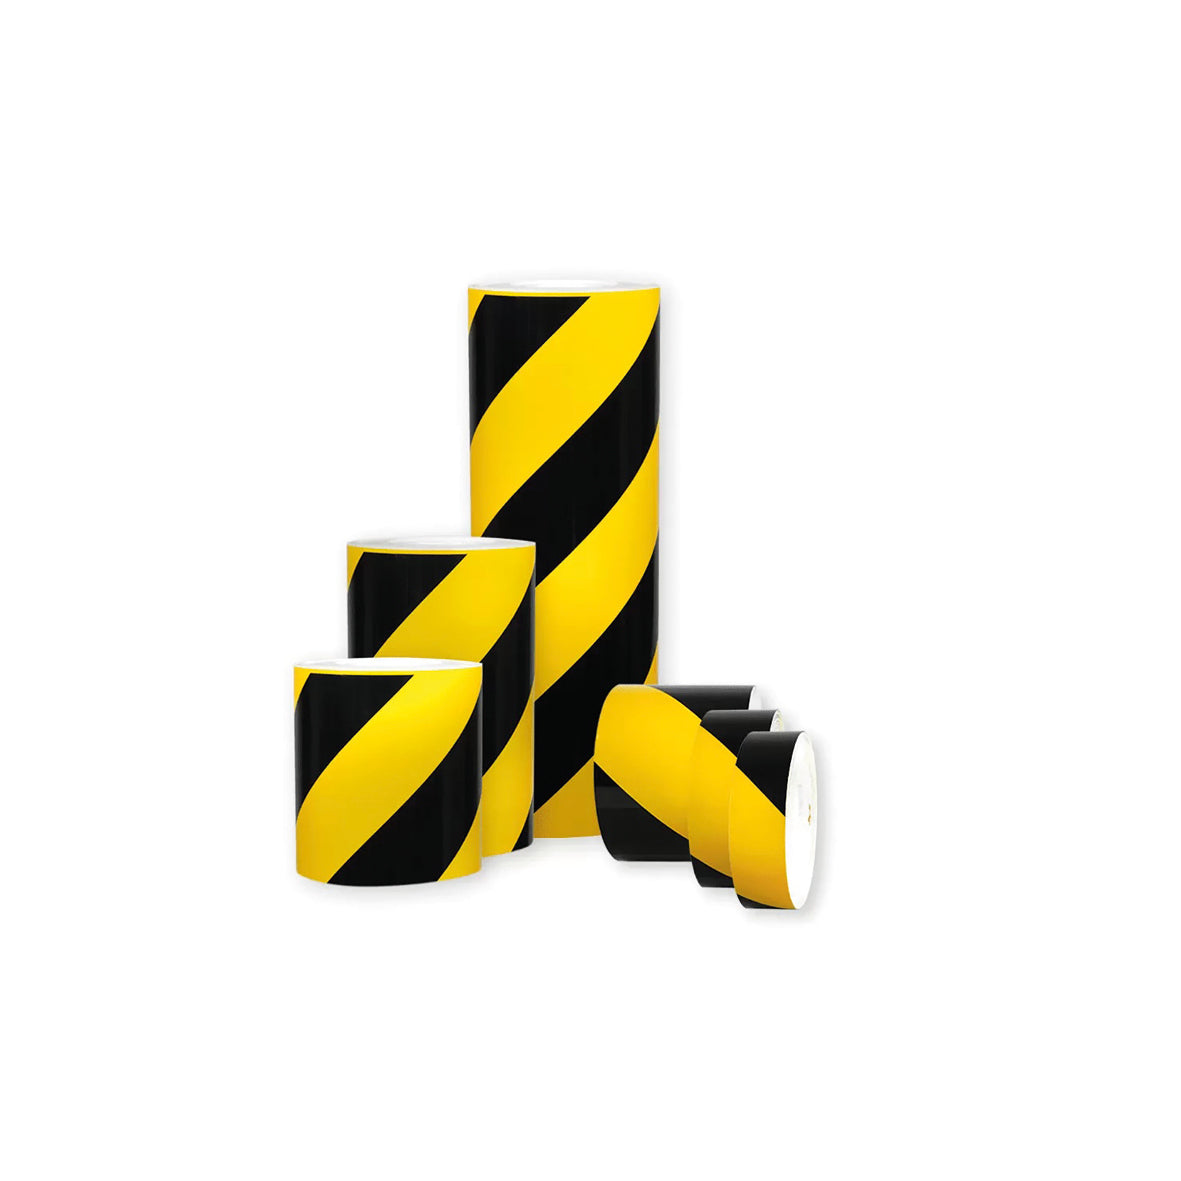 Warnmarkierungsband R1, für Fahrzeuge, R1, gelb-schwarz, 10 m x 600 mm, linksweisend